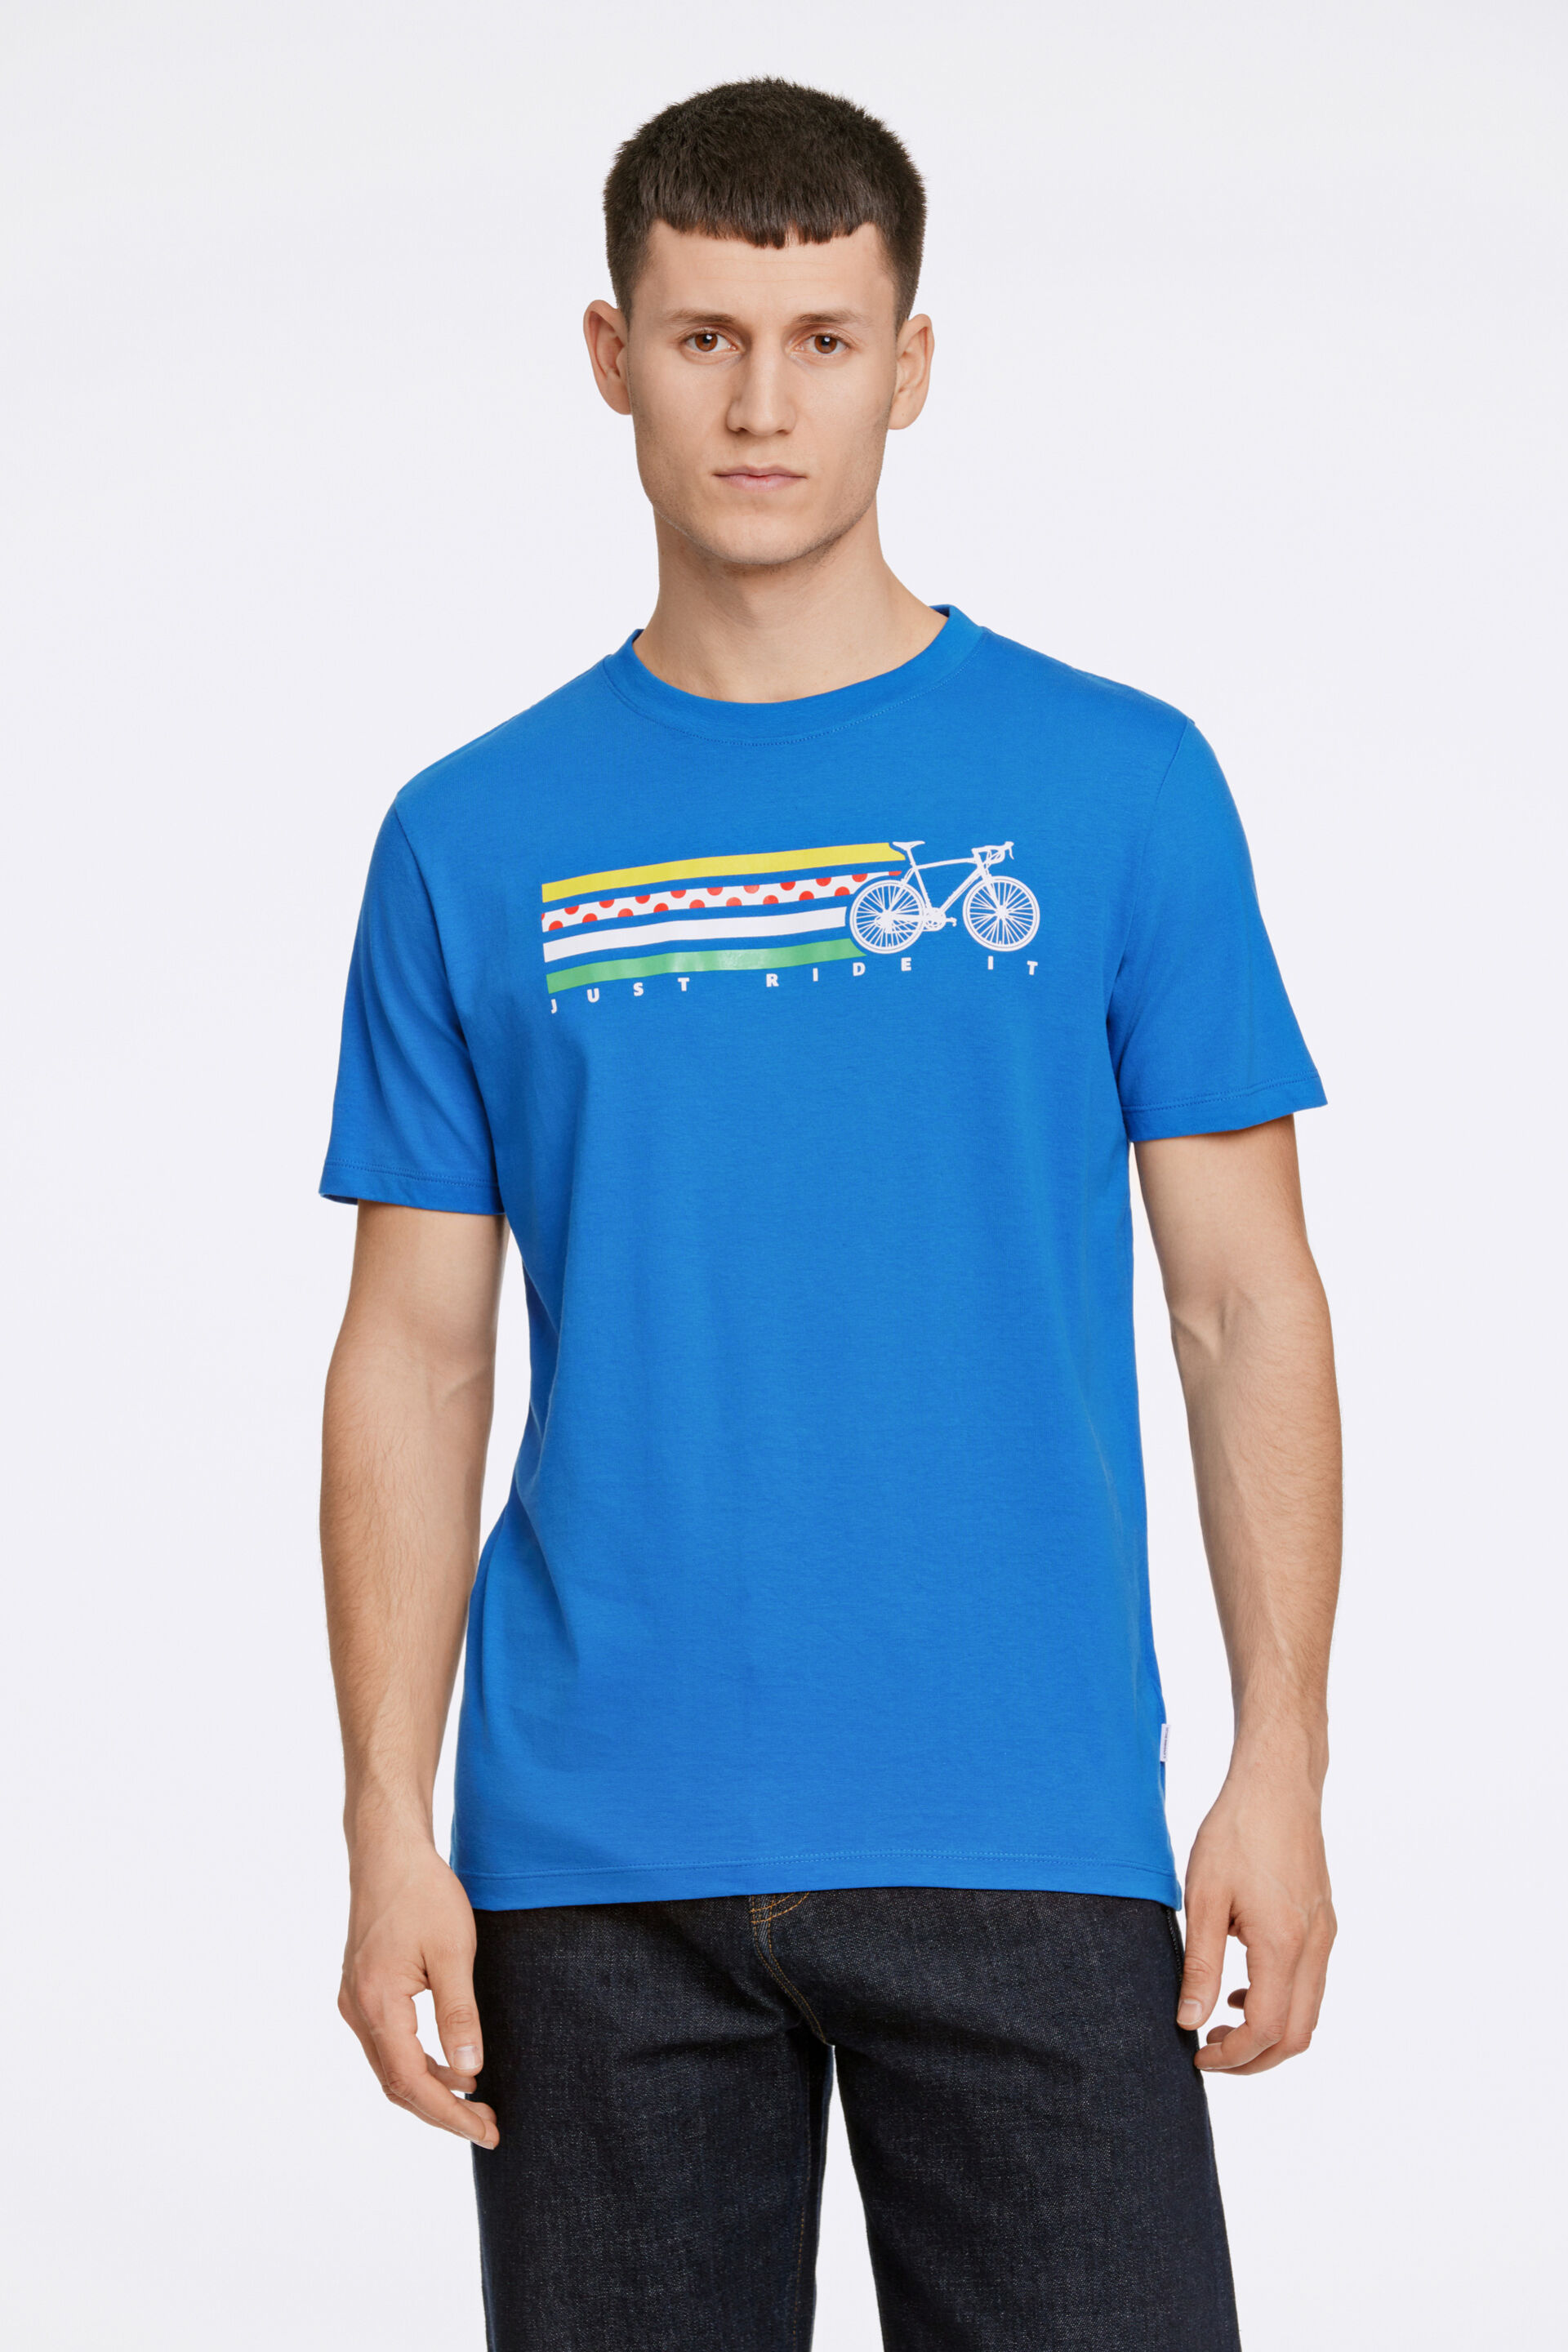 T-shirt T-shirt Blau 30-400283